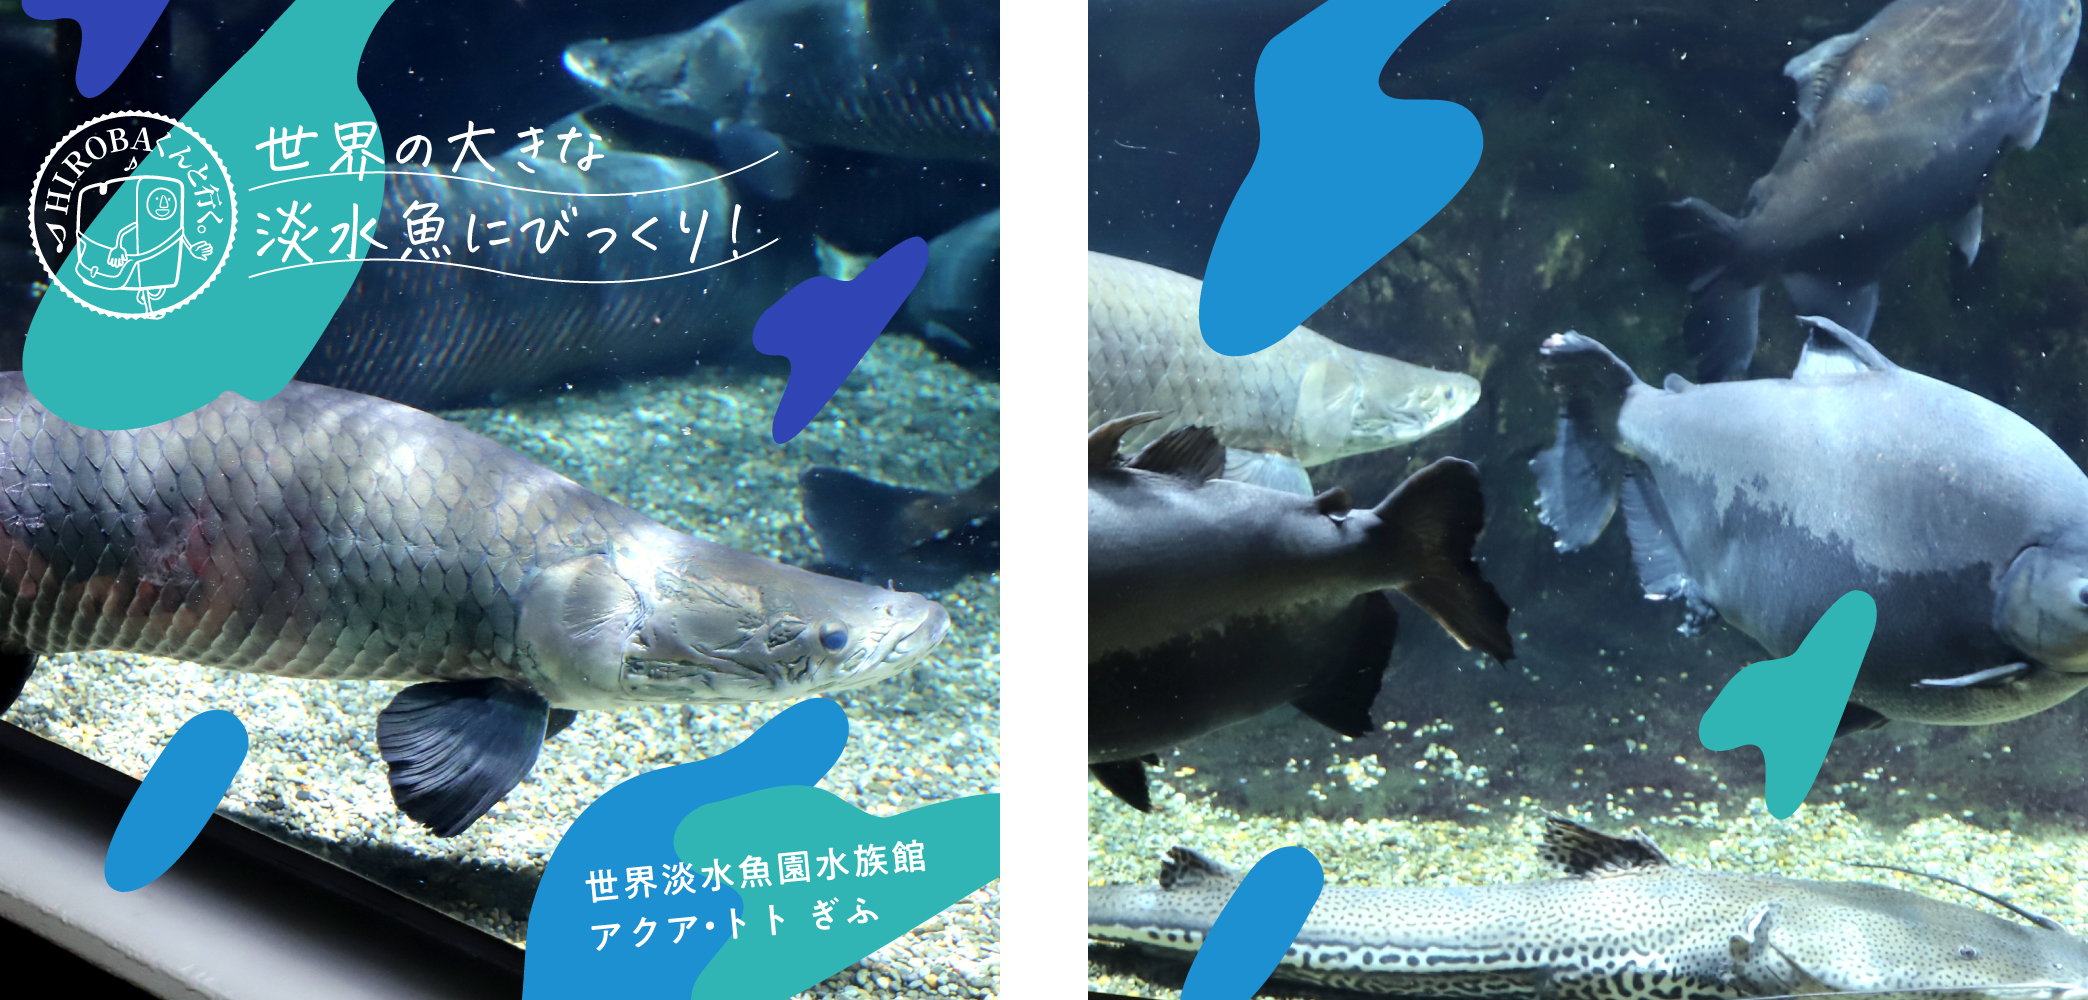 世界淡水魚園水族館【アクア・トト ぎふ】